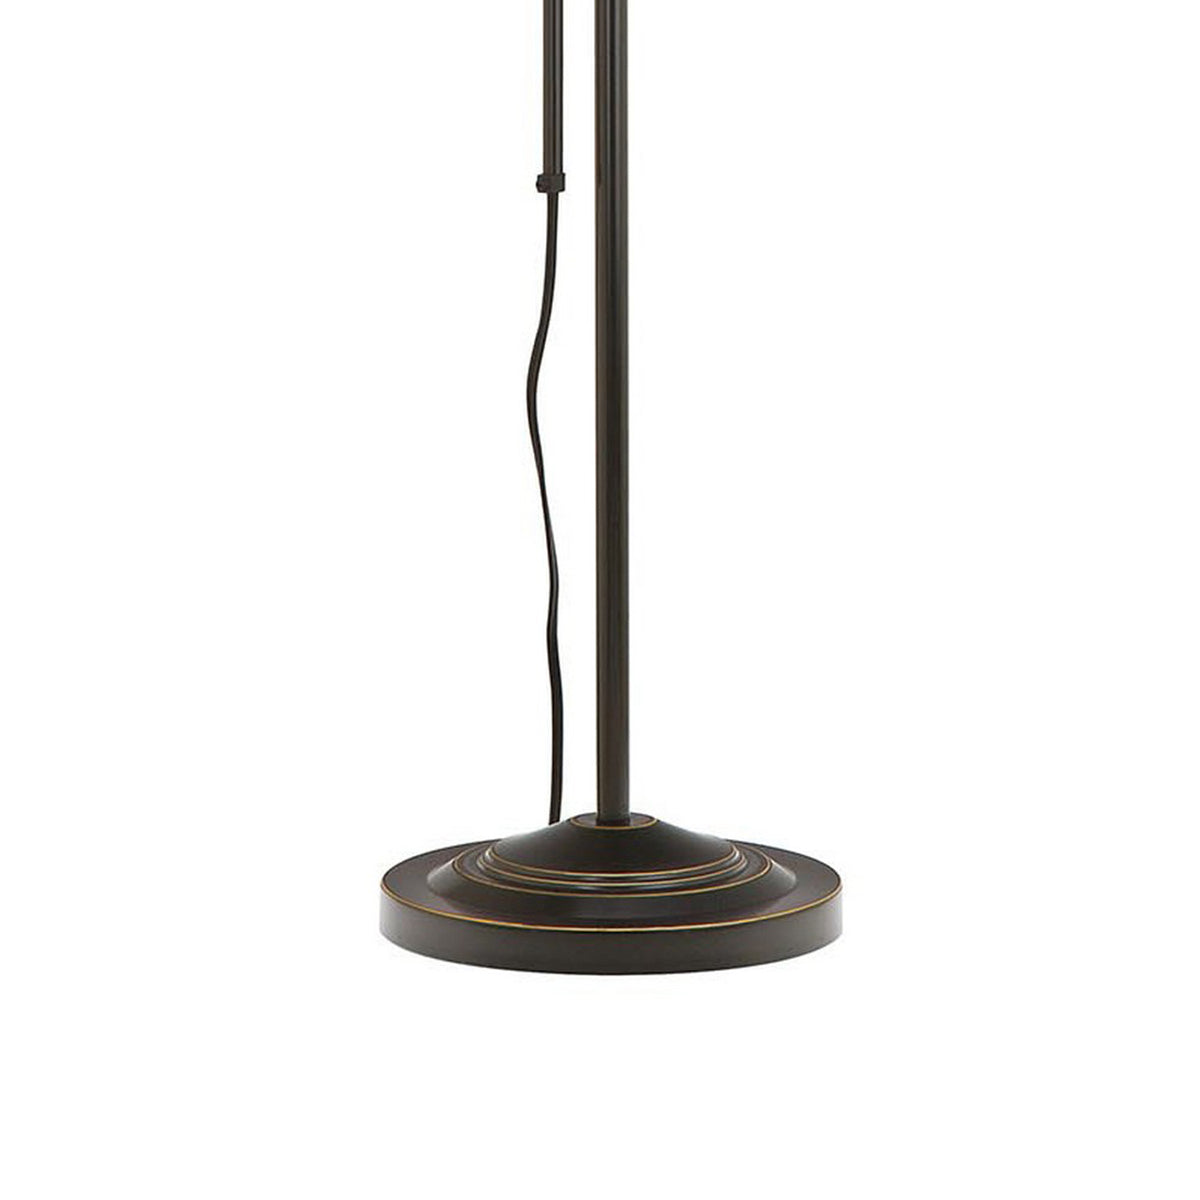 Metal Rectangular Floor Lamp with Adjustable Pole, Dark Bronze - BM225081